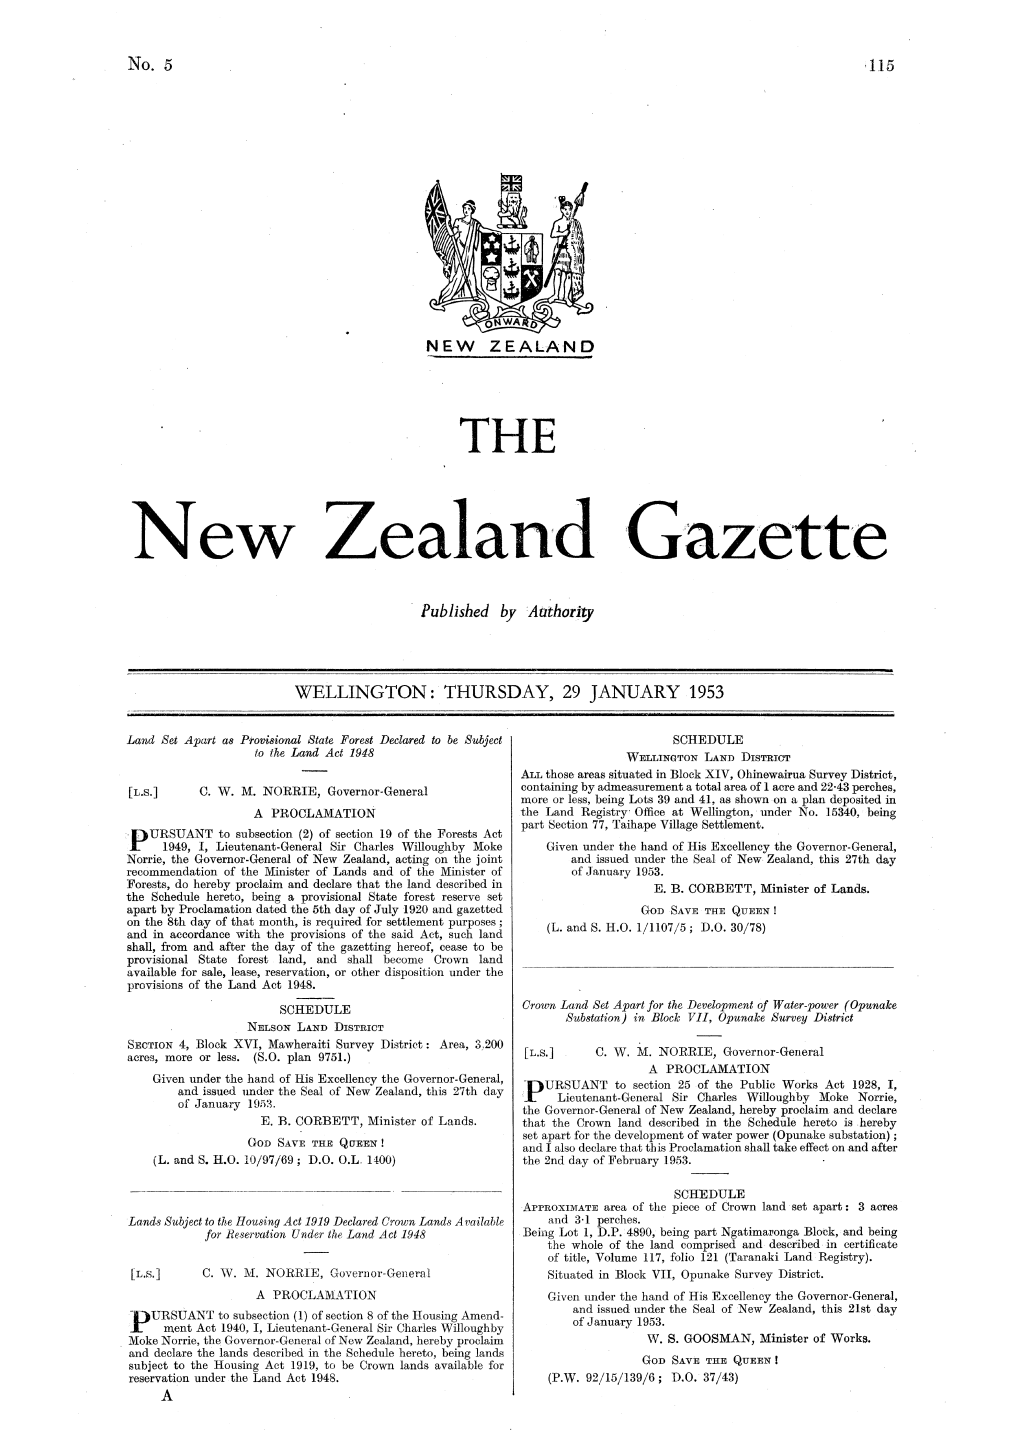 No 5, 29 January 1953